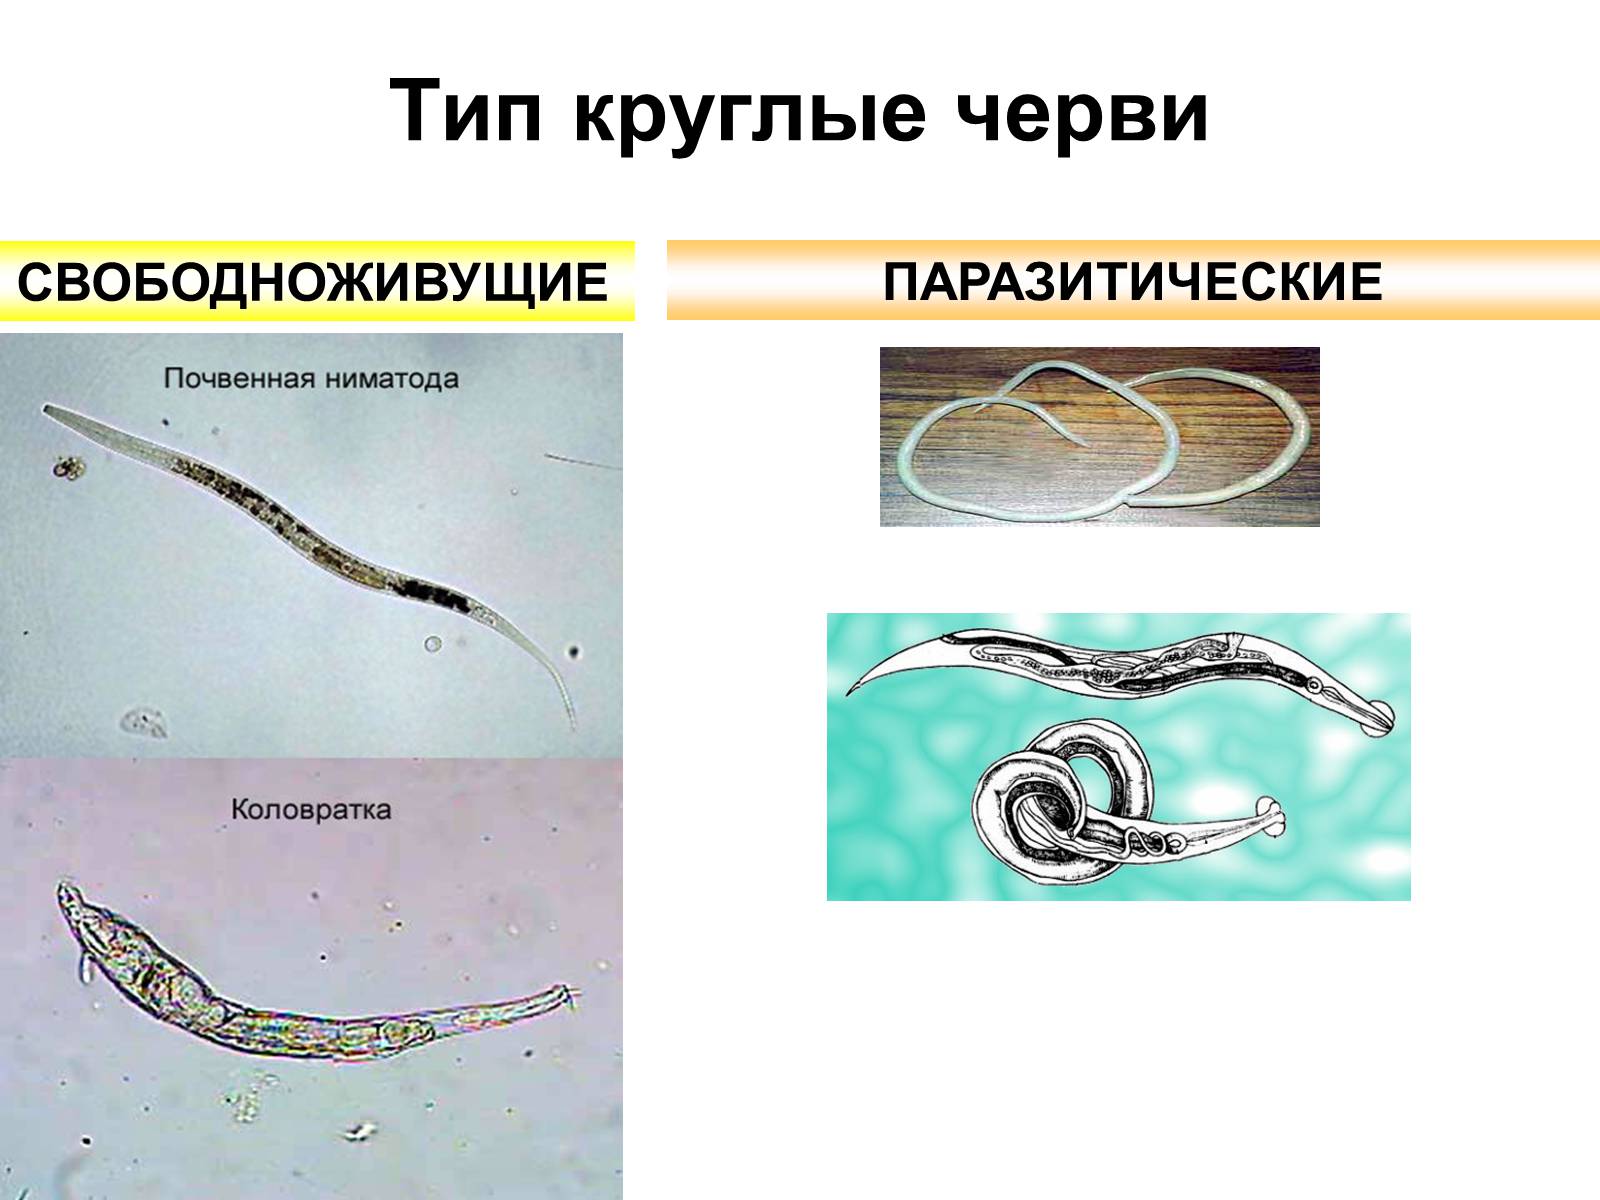 К круглым червям относятся ответ. Паразитические черви Тип круглые черви. Свободоживущие и паразитические червей. Свободноживущие нематоды черви. Круглые черви паразиты представители.